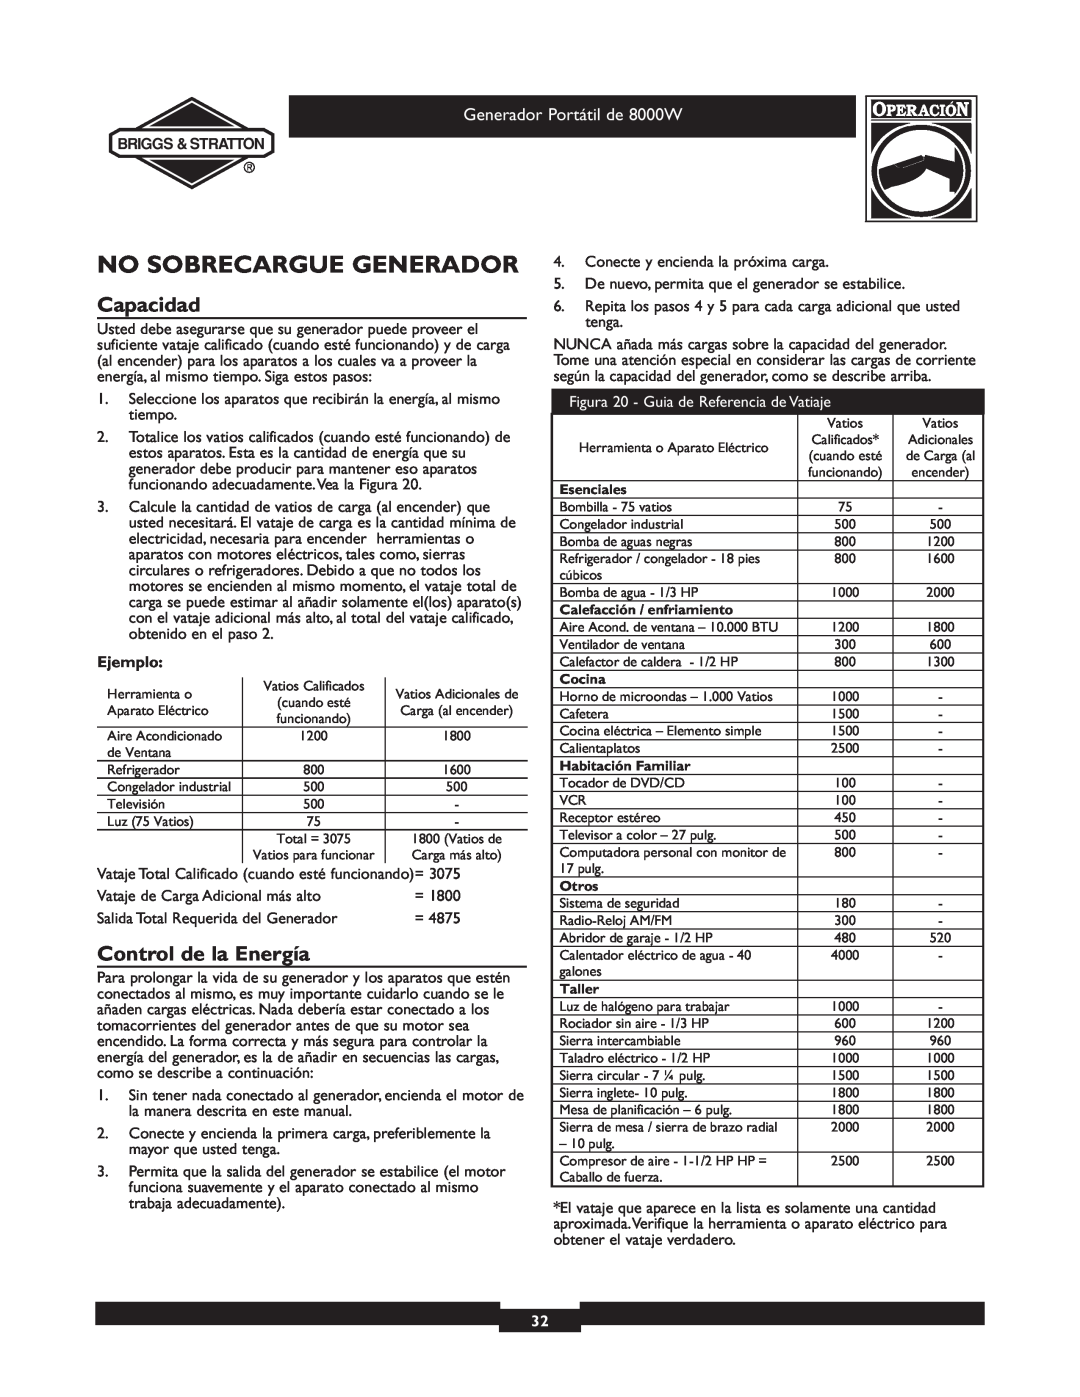 Briggs & Stratton 030210-2 manual No Sobrecargue Generador, Capacidad, Control de la Energía, Generador Portátil de 8000W 